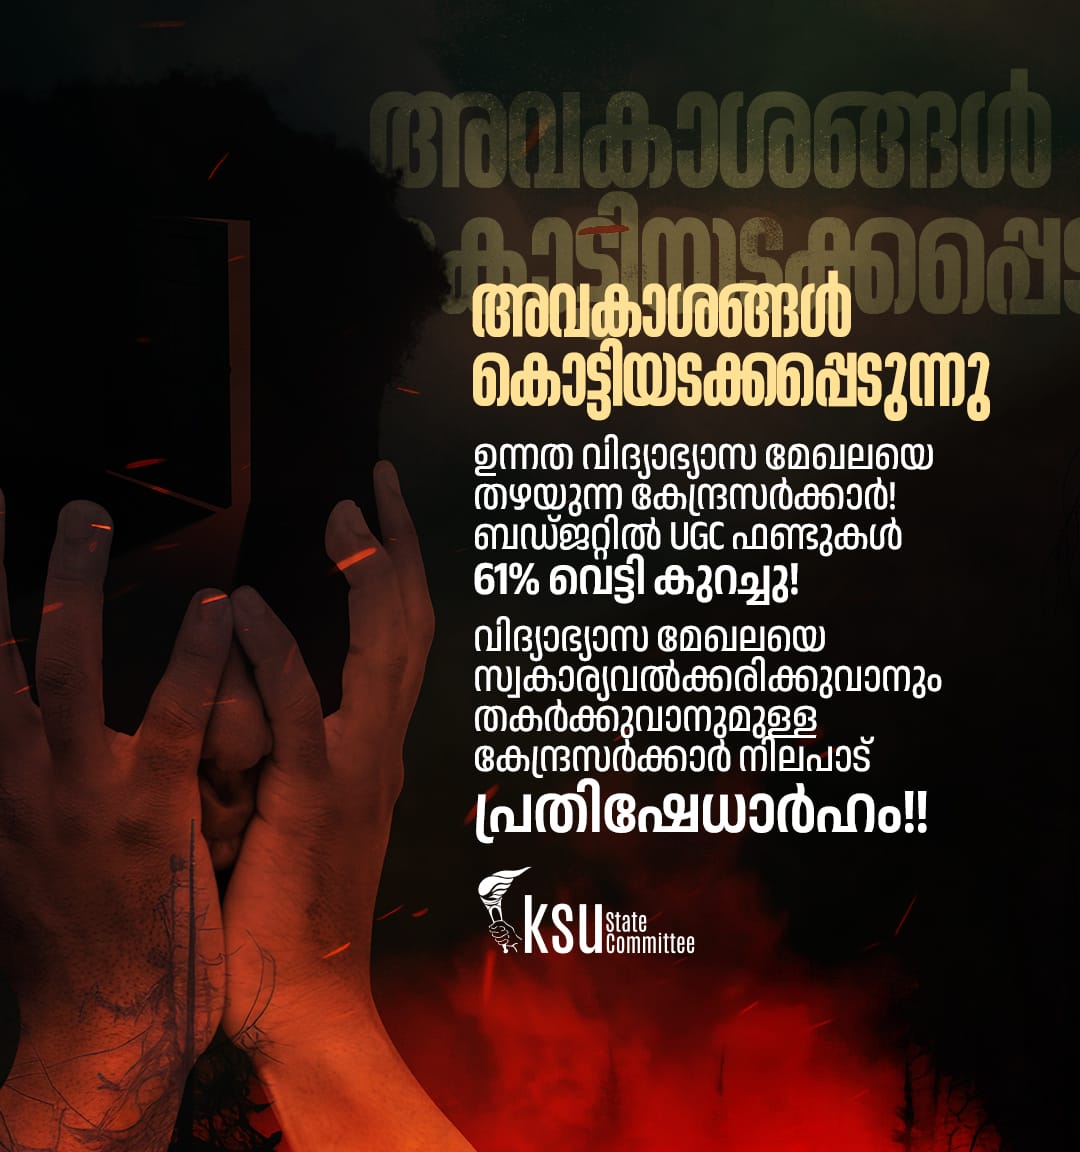 ഫാസിസ്റ്റ് ഭരണത്തിൽ വിദ്യാർത്ഥികൾ കൂടുതൽ ഒന്നും പ്രതീക്ഷിക്കുന്നില്ല.
#KSU
#KeralaStudentsUnion